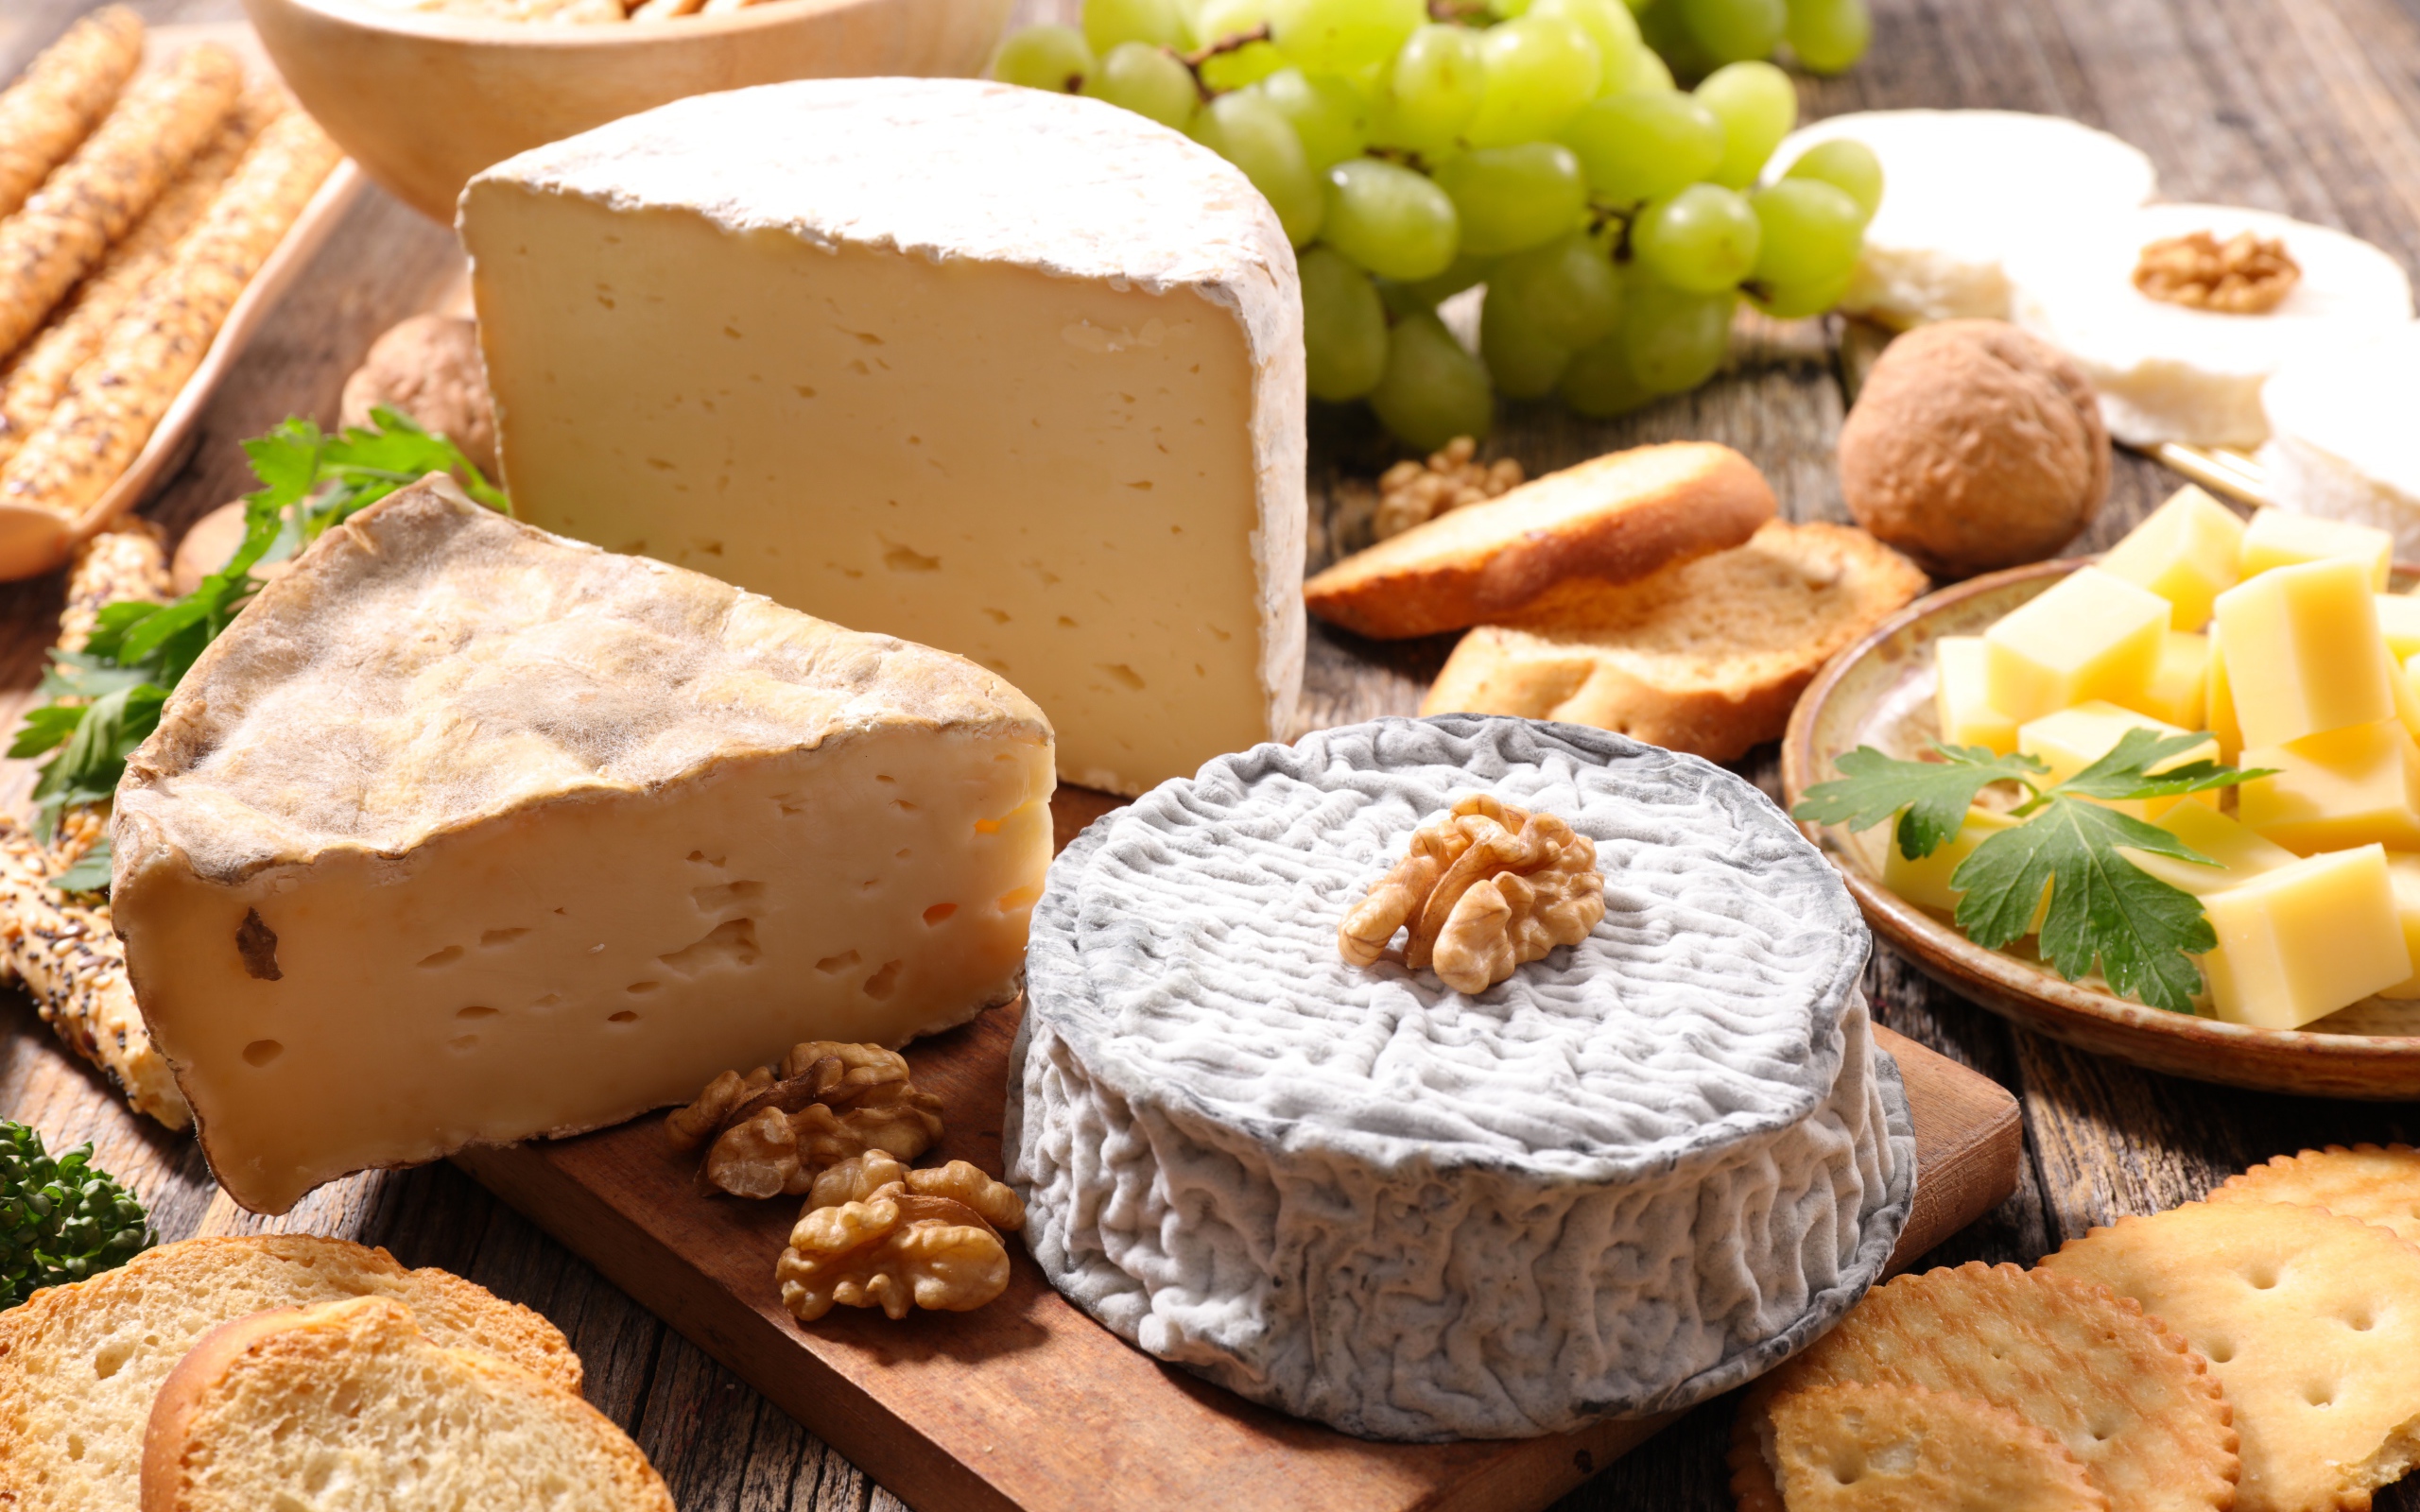 Сыр с плесенью на столе с виноградом, орехами и хлебом